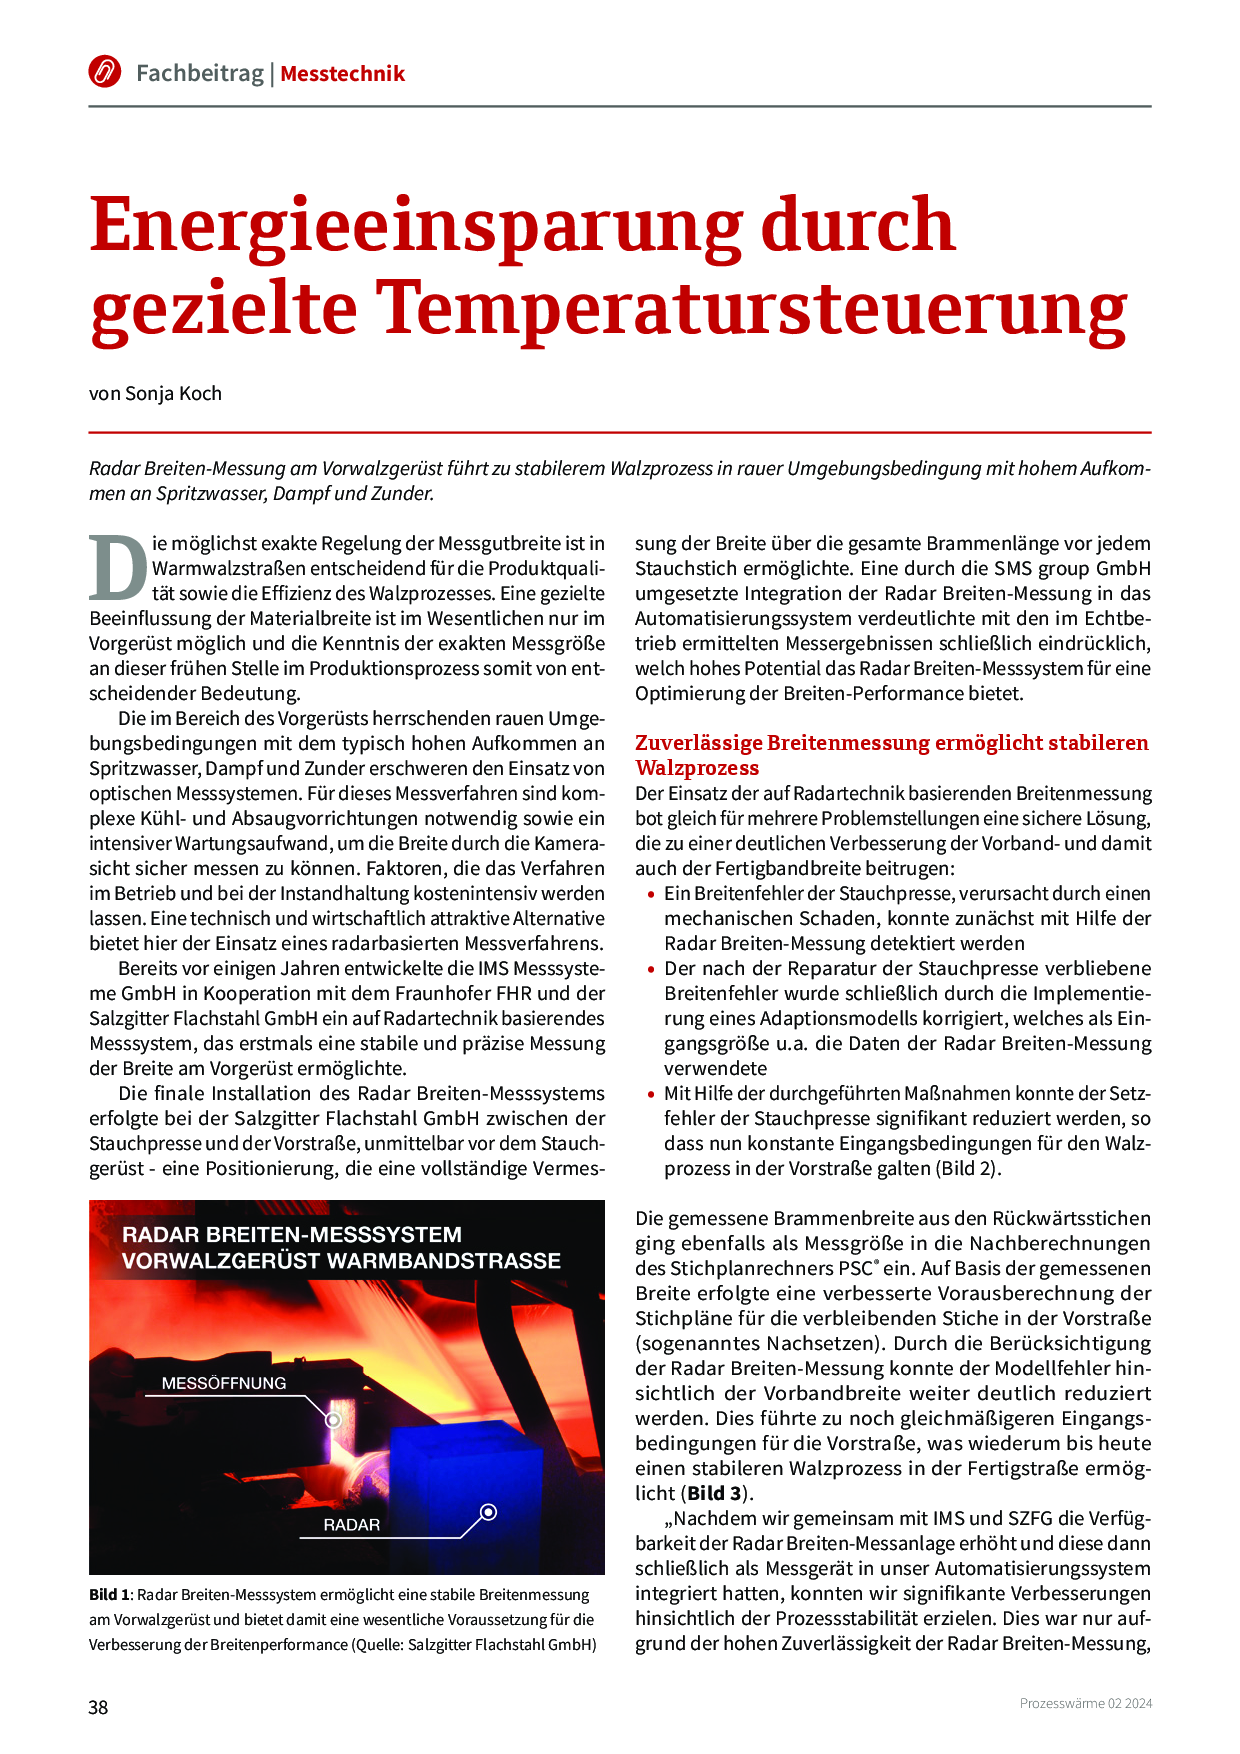 Energieeinsparung durch gezielte Temperatursteuerung